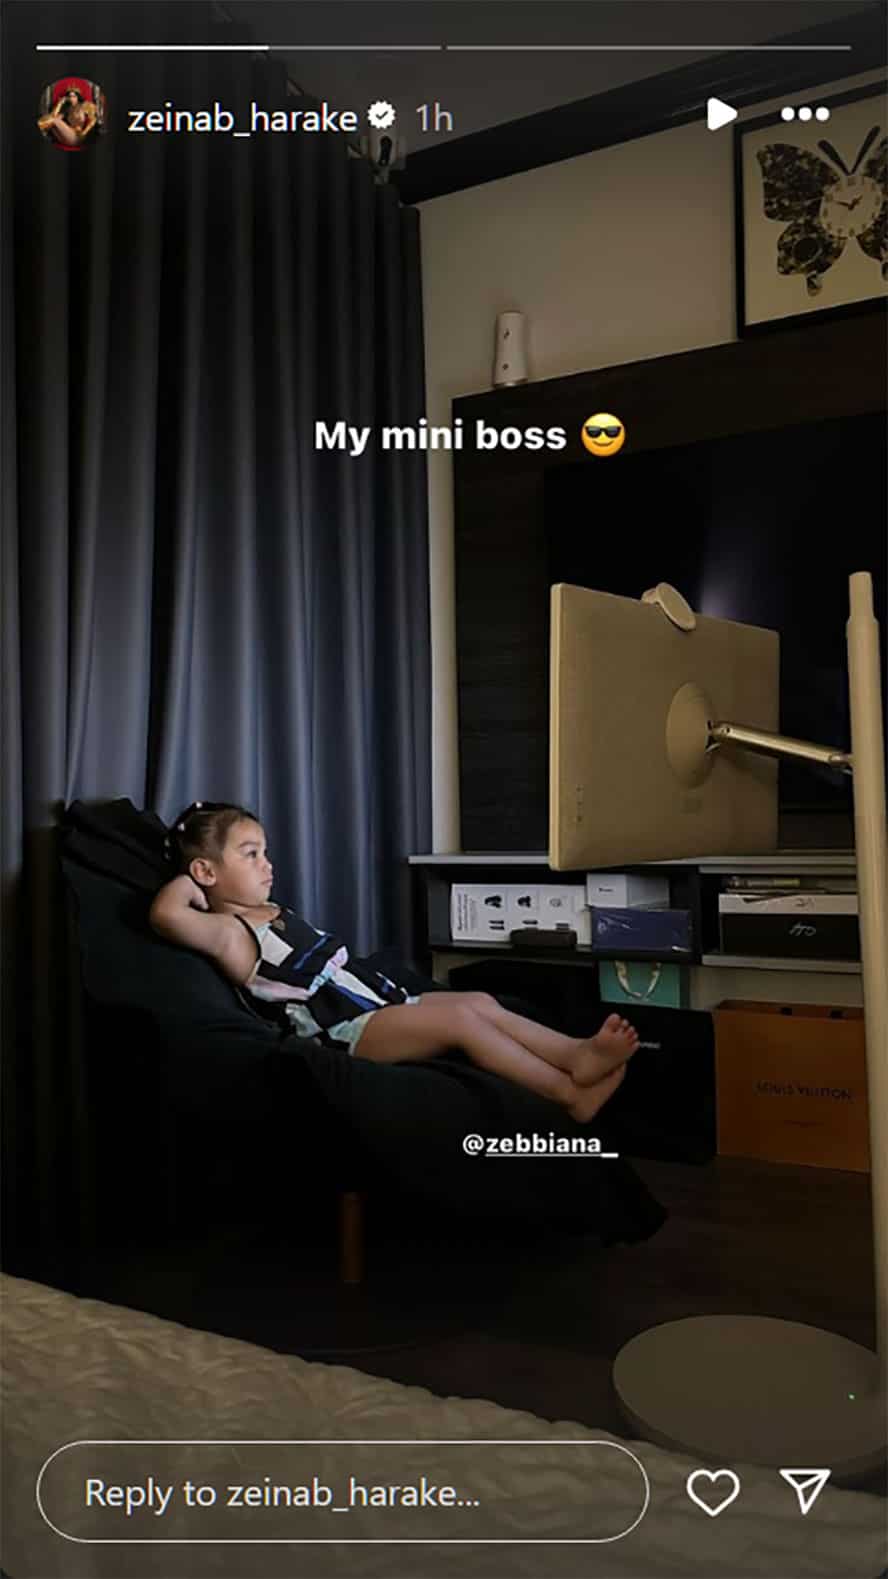 Zeinab Harake, nag-post ng nakatutuwang pic ni Bia: "My mini boss"